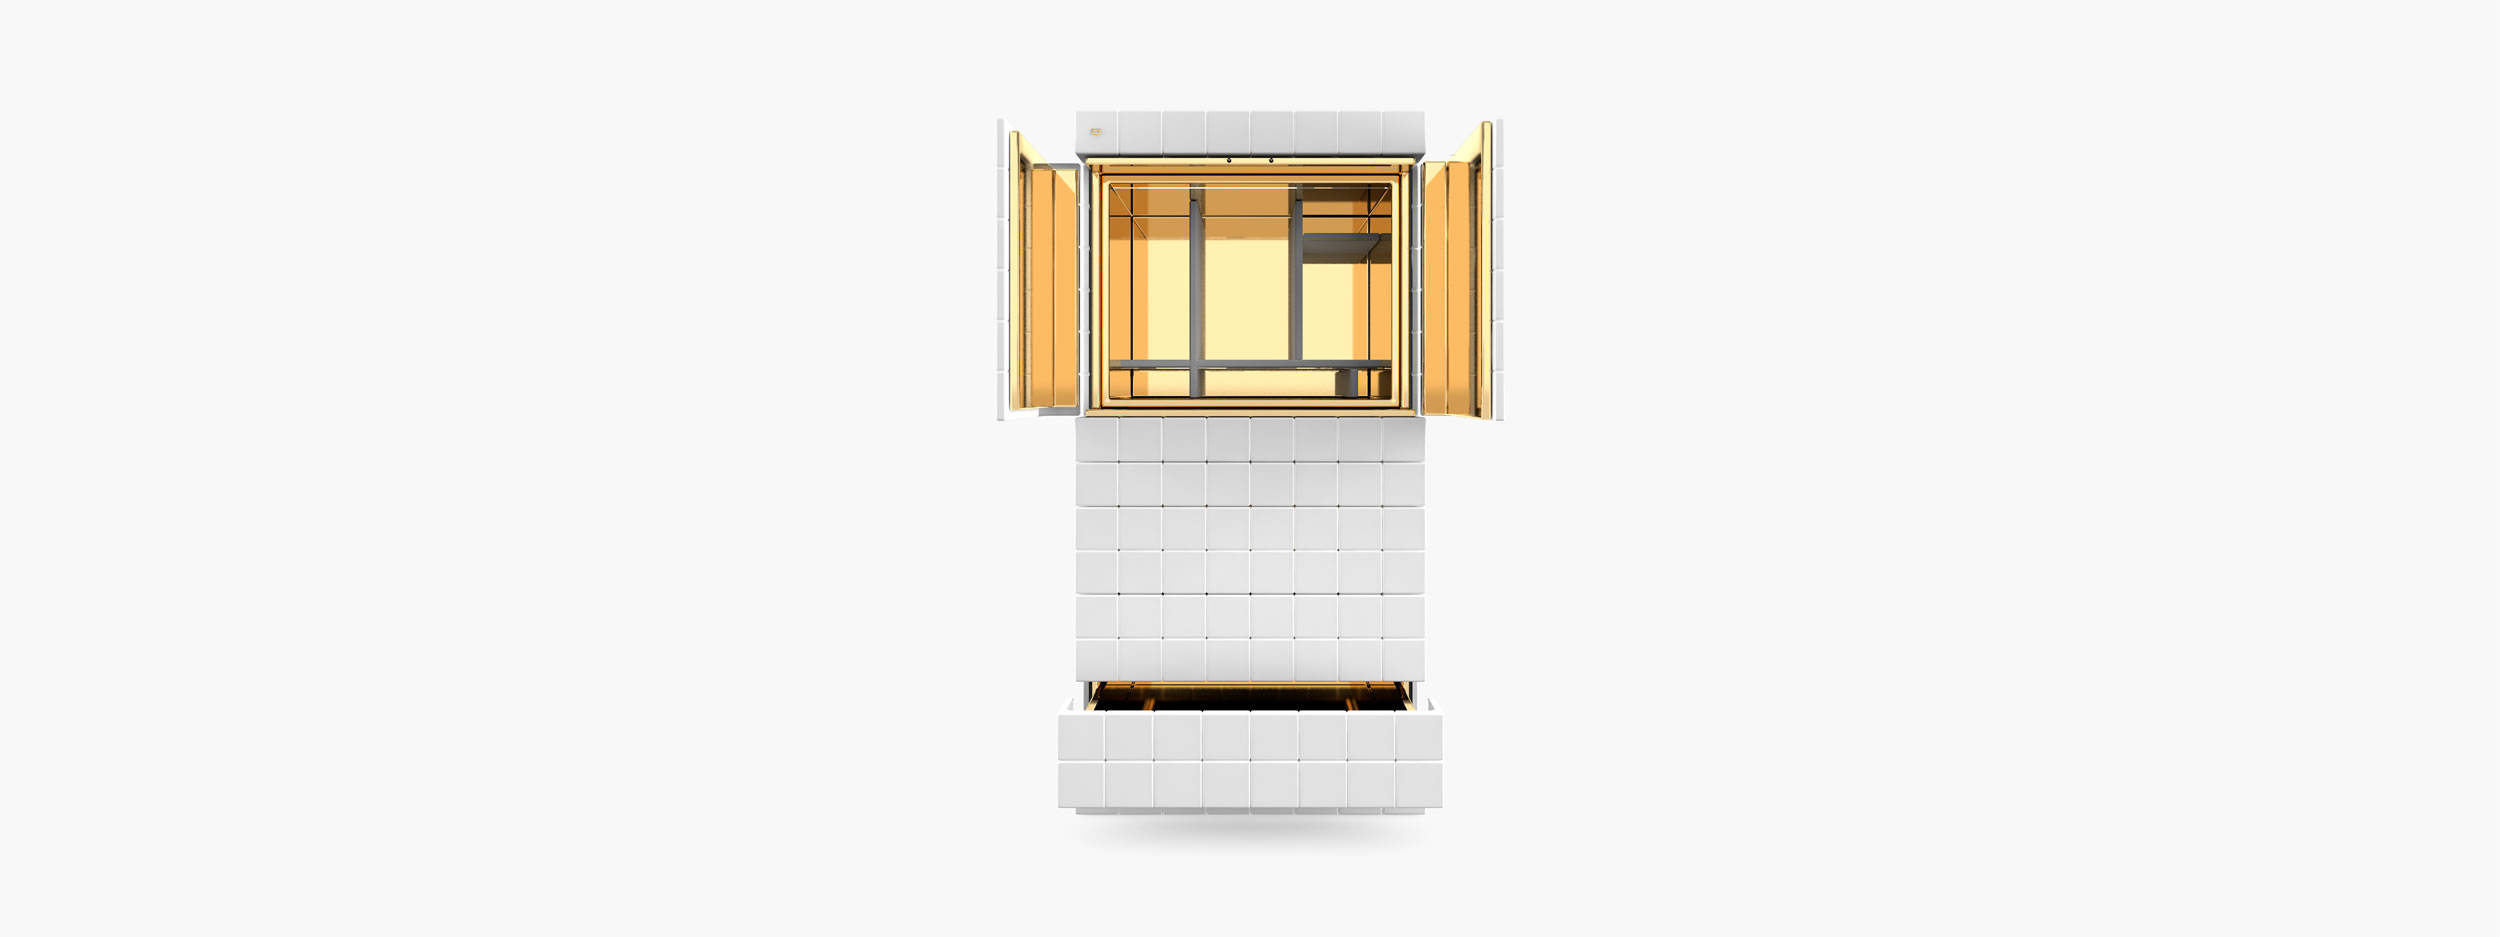 Schrank aus Kuben weiss contemporaryart Wohnzimmer interior design Schraenke FS 148 FELIX SCHWAKE RECHTECK